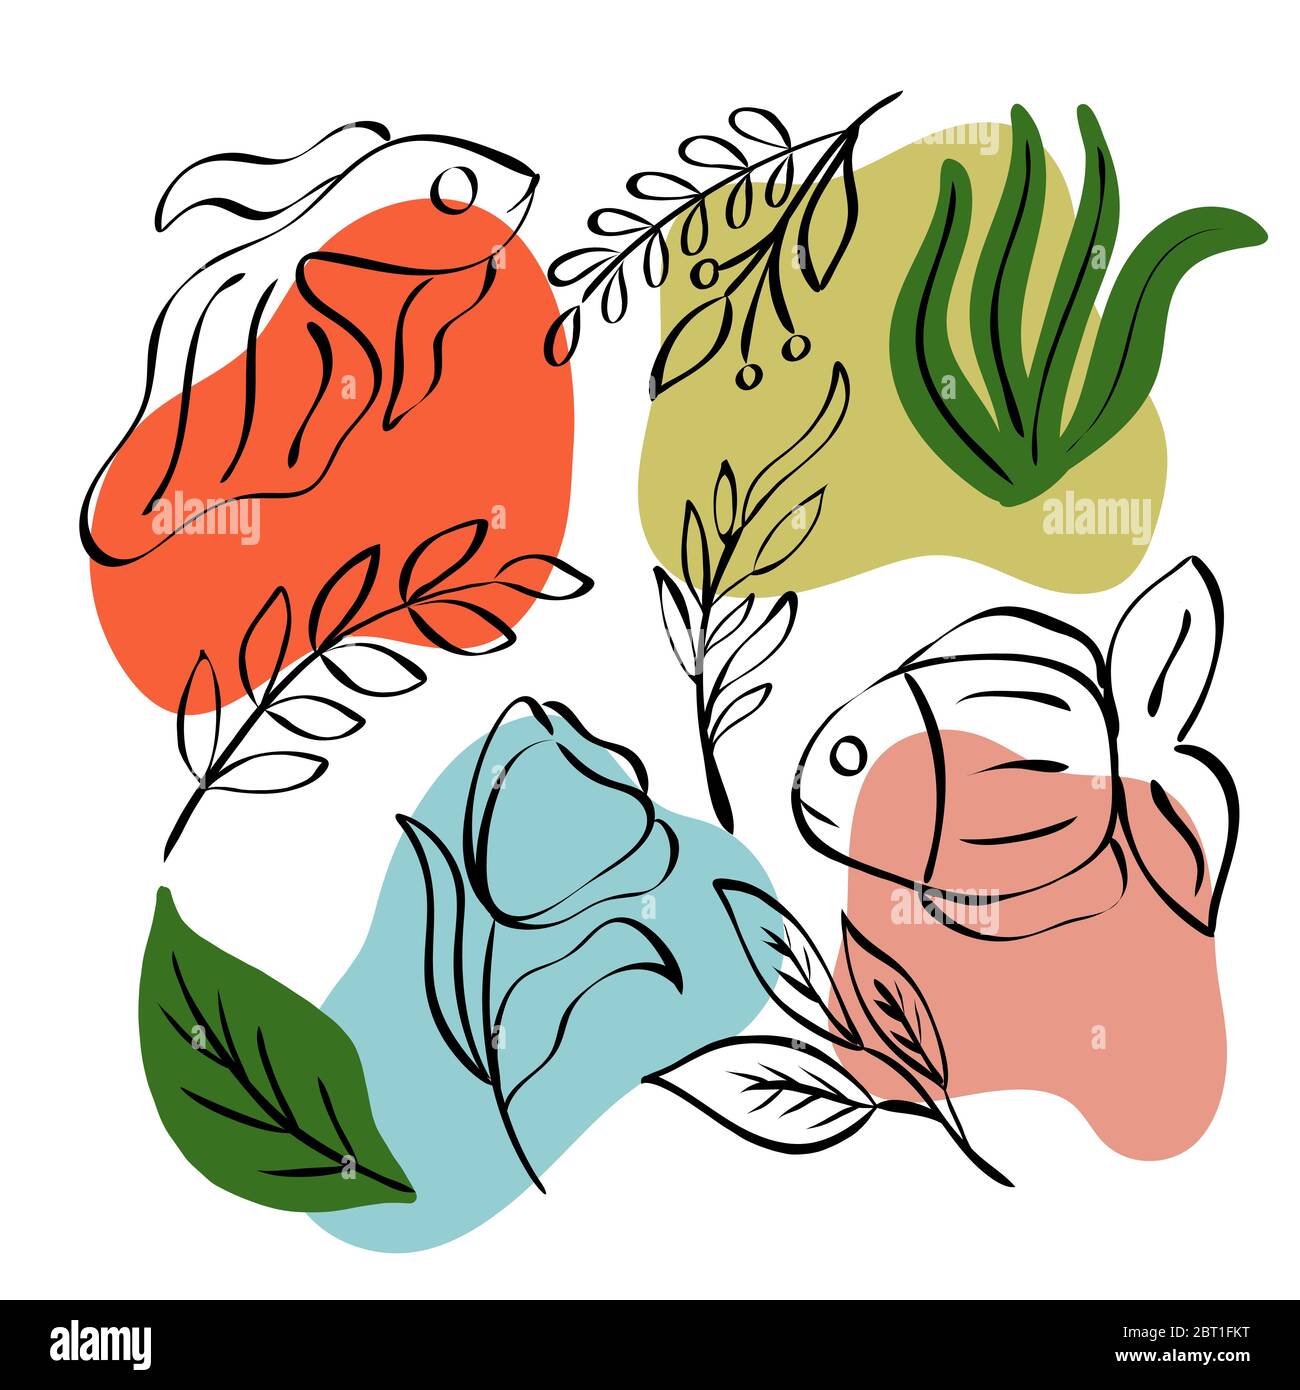 Motif abstrait avec taches de couleur, poissons, feuilles, fleurs dans un style linéaire. Graphiques vectoriels pour la conception de cartes postales, affiches, imprimés pour textiles Illustration de Vecteur